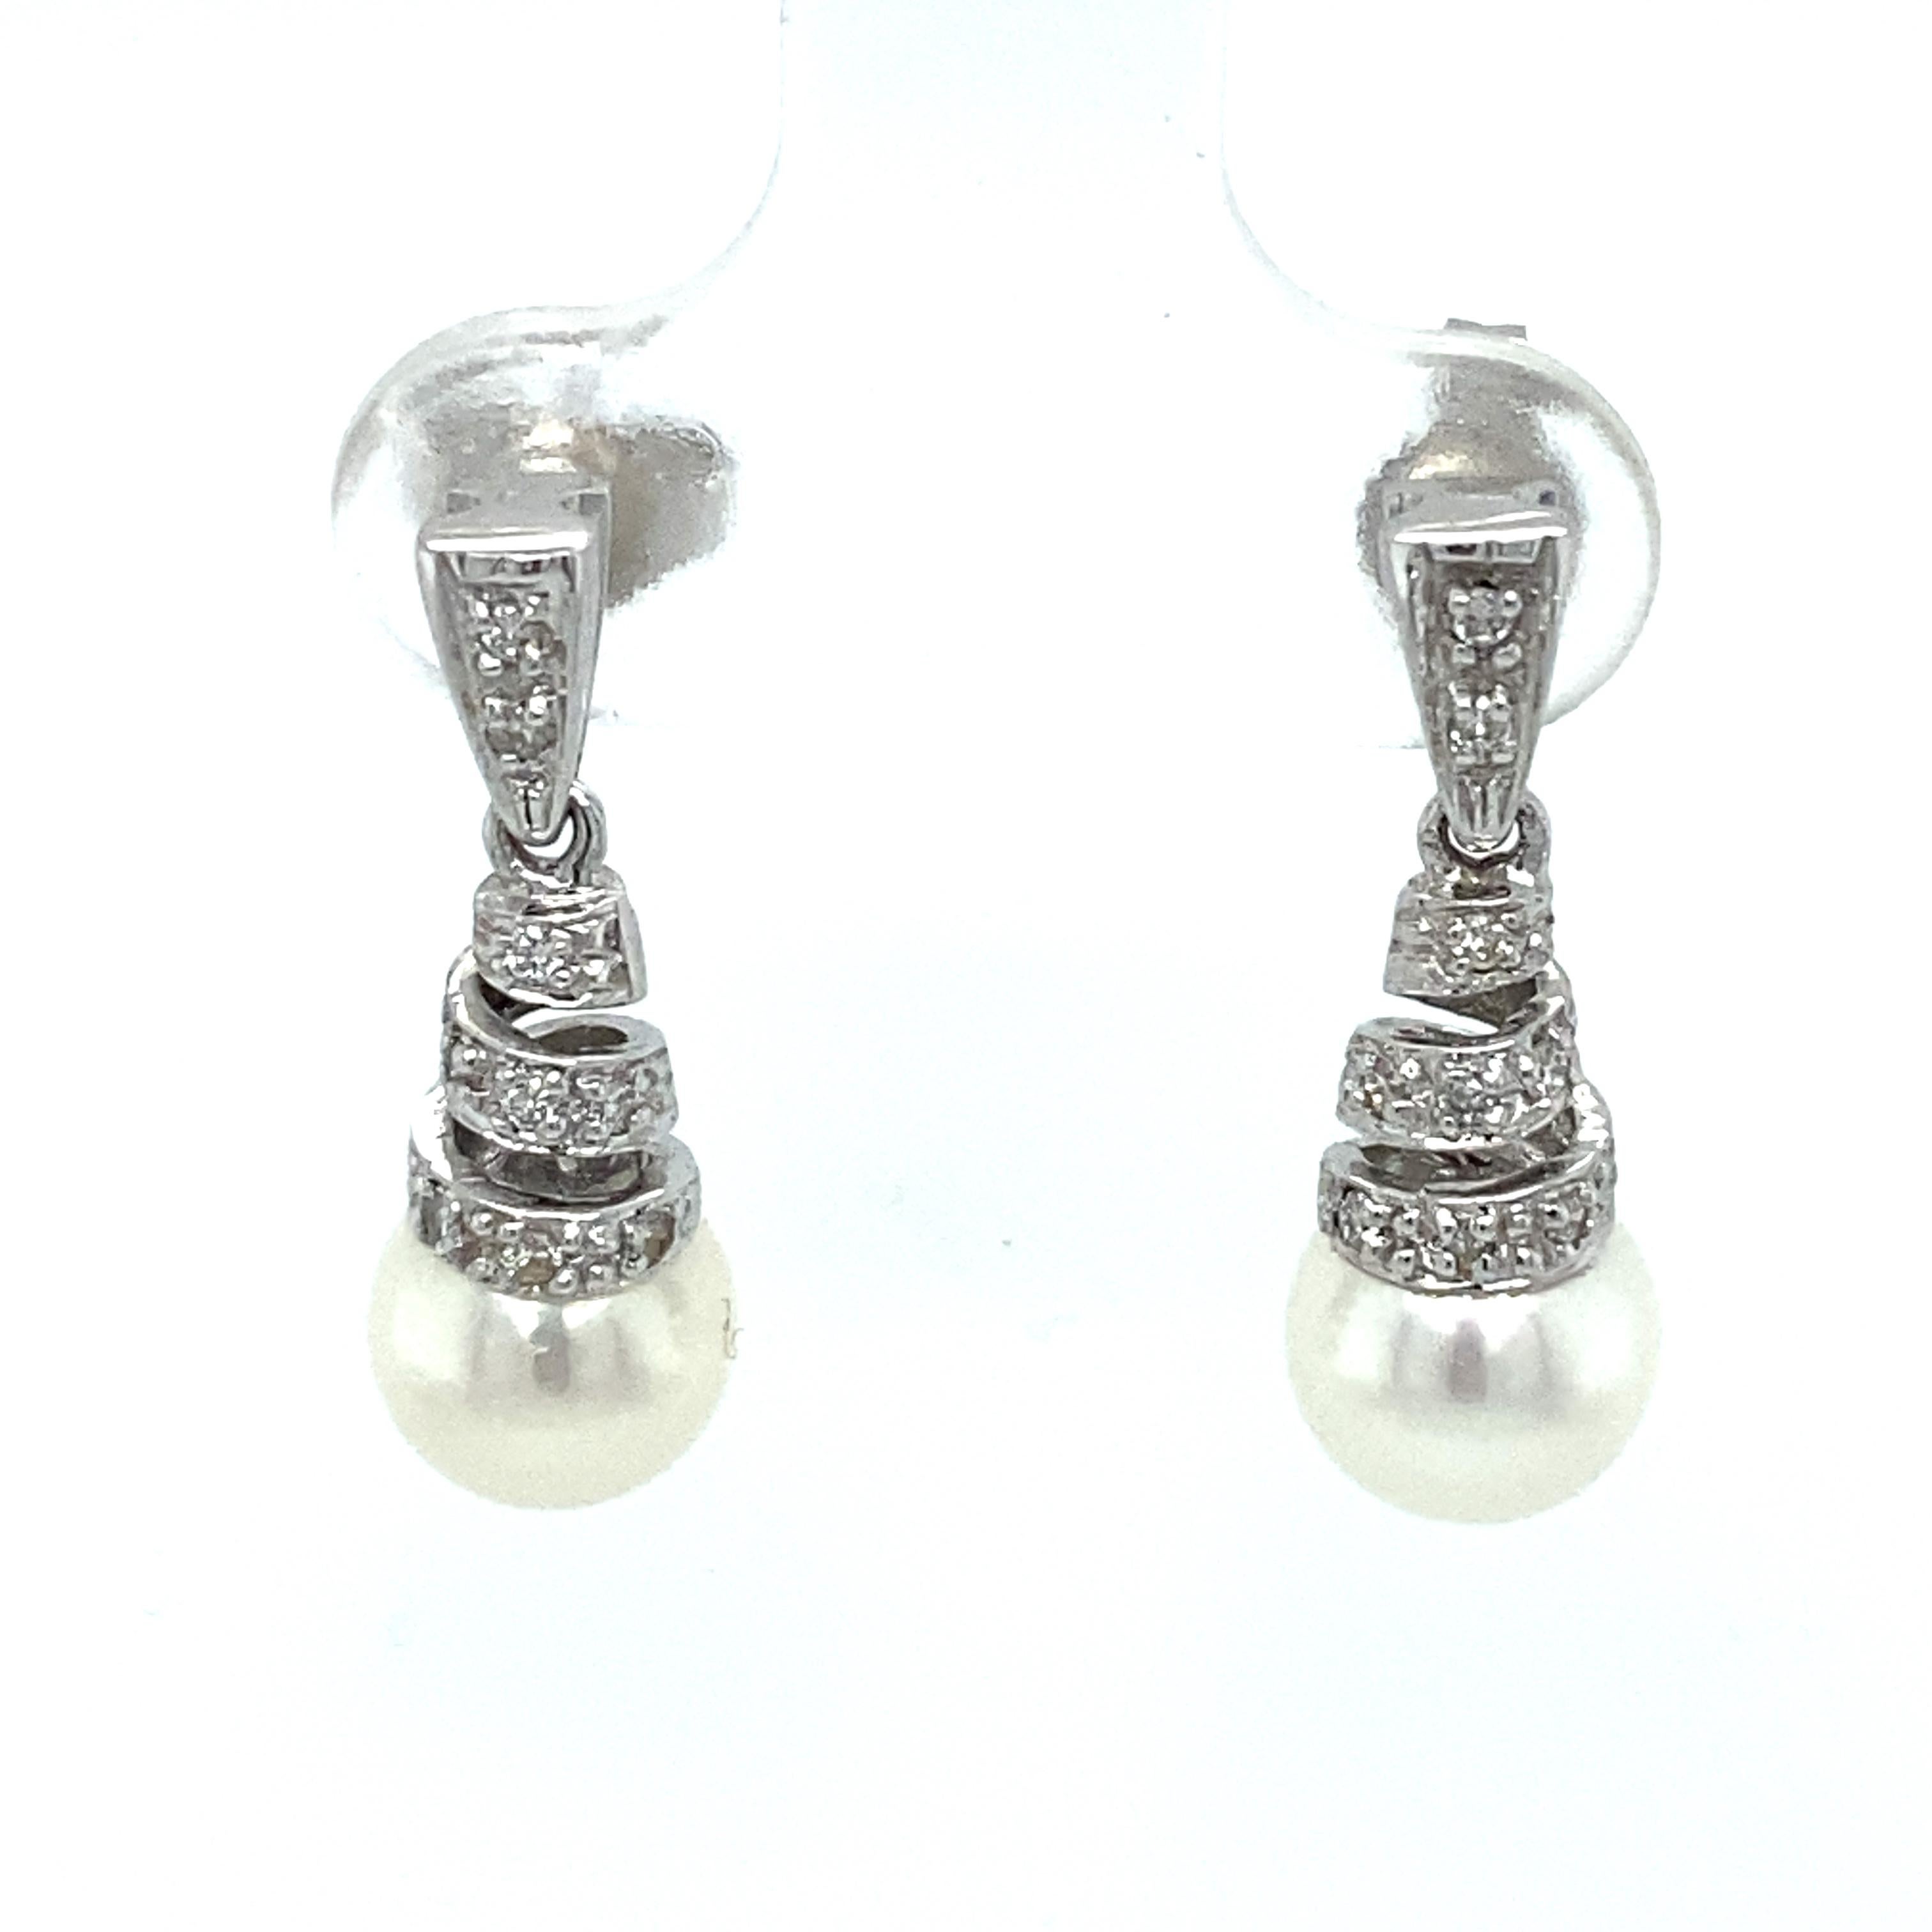 Artikel-Details: Diese tropfenförmigen Ohrringe aus den 1990er Jahren haben ein spiralförmiges Design mit Akoya-Perlen und Diamantakzenten und sind aus glänzendem 14 Karat Weißgold gefertigt.

Circa: 1990er Jahre
Metall Typ: 14k Weißgold
Gewicht: